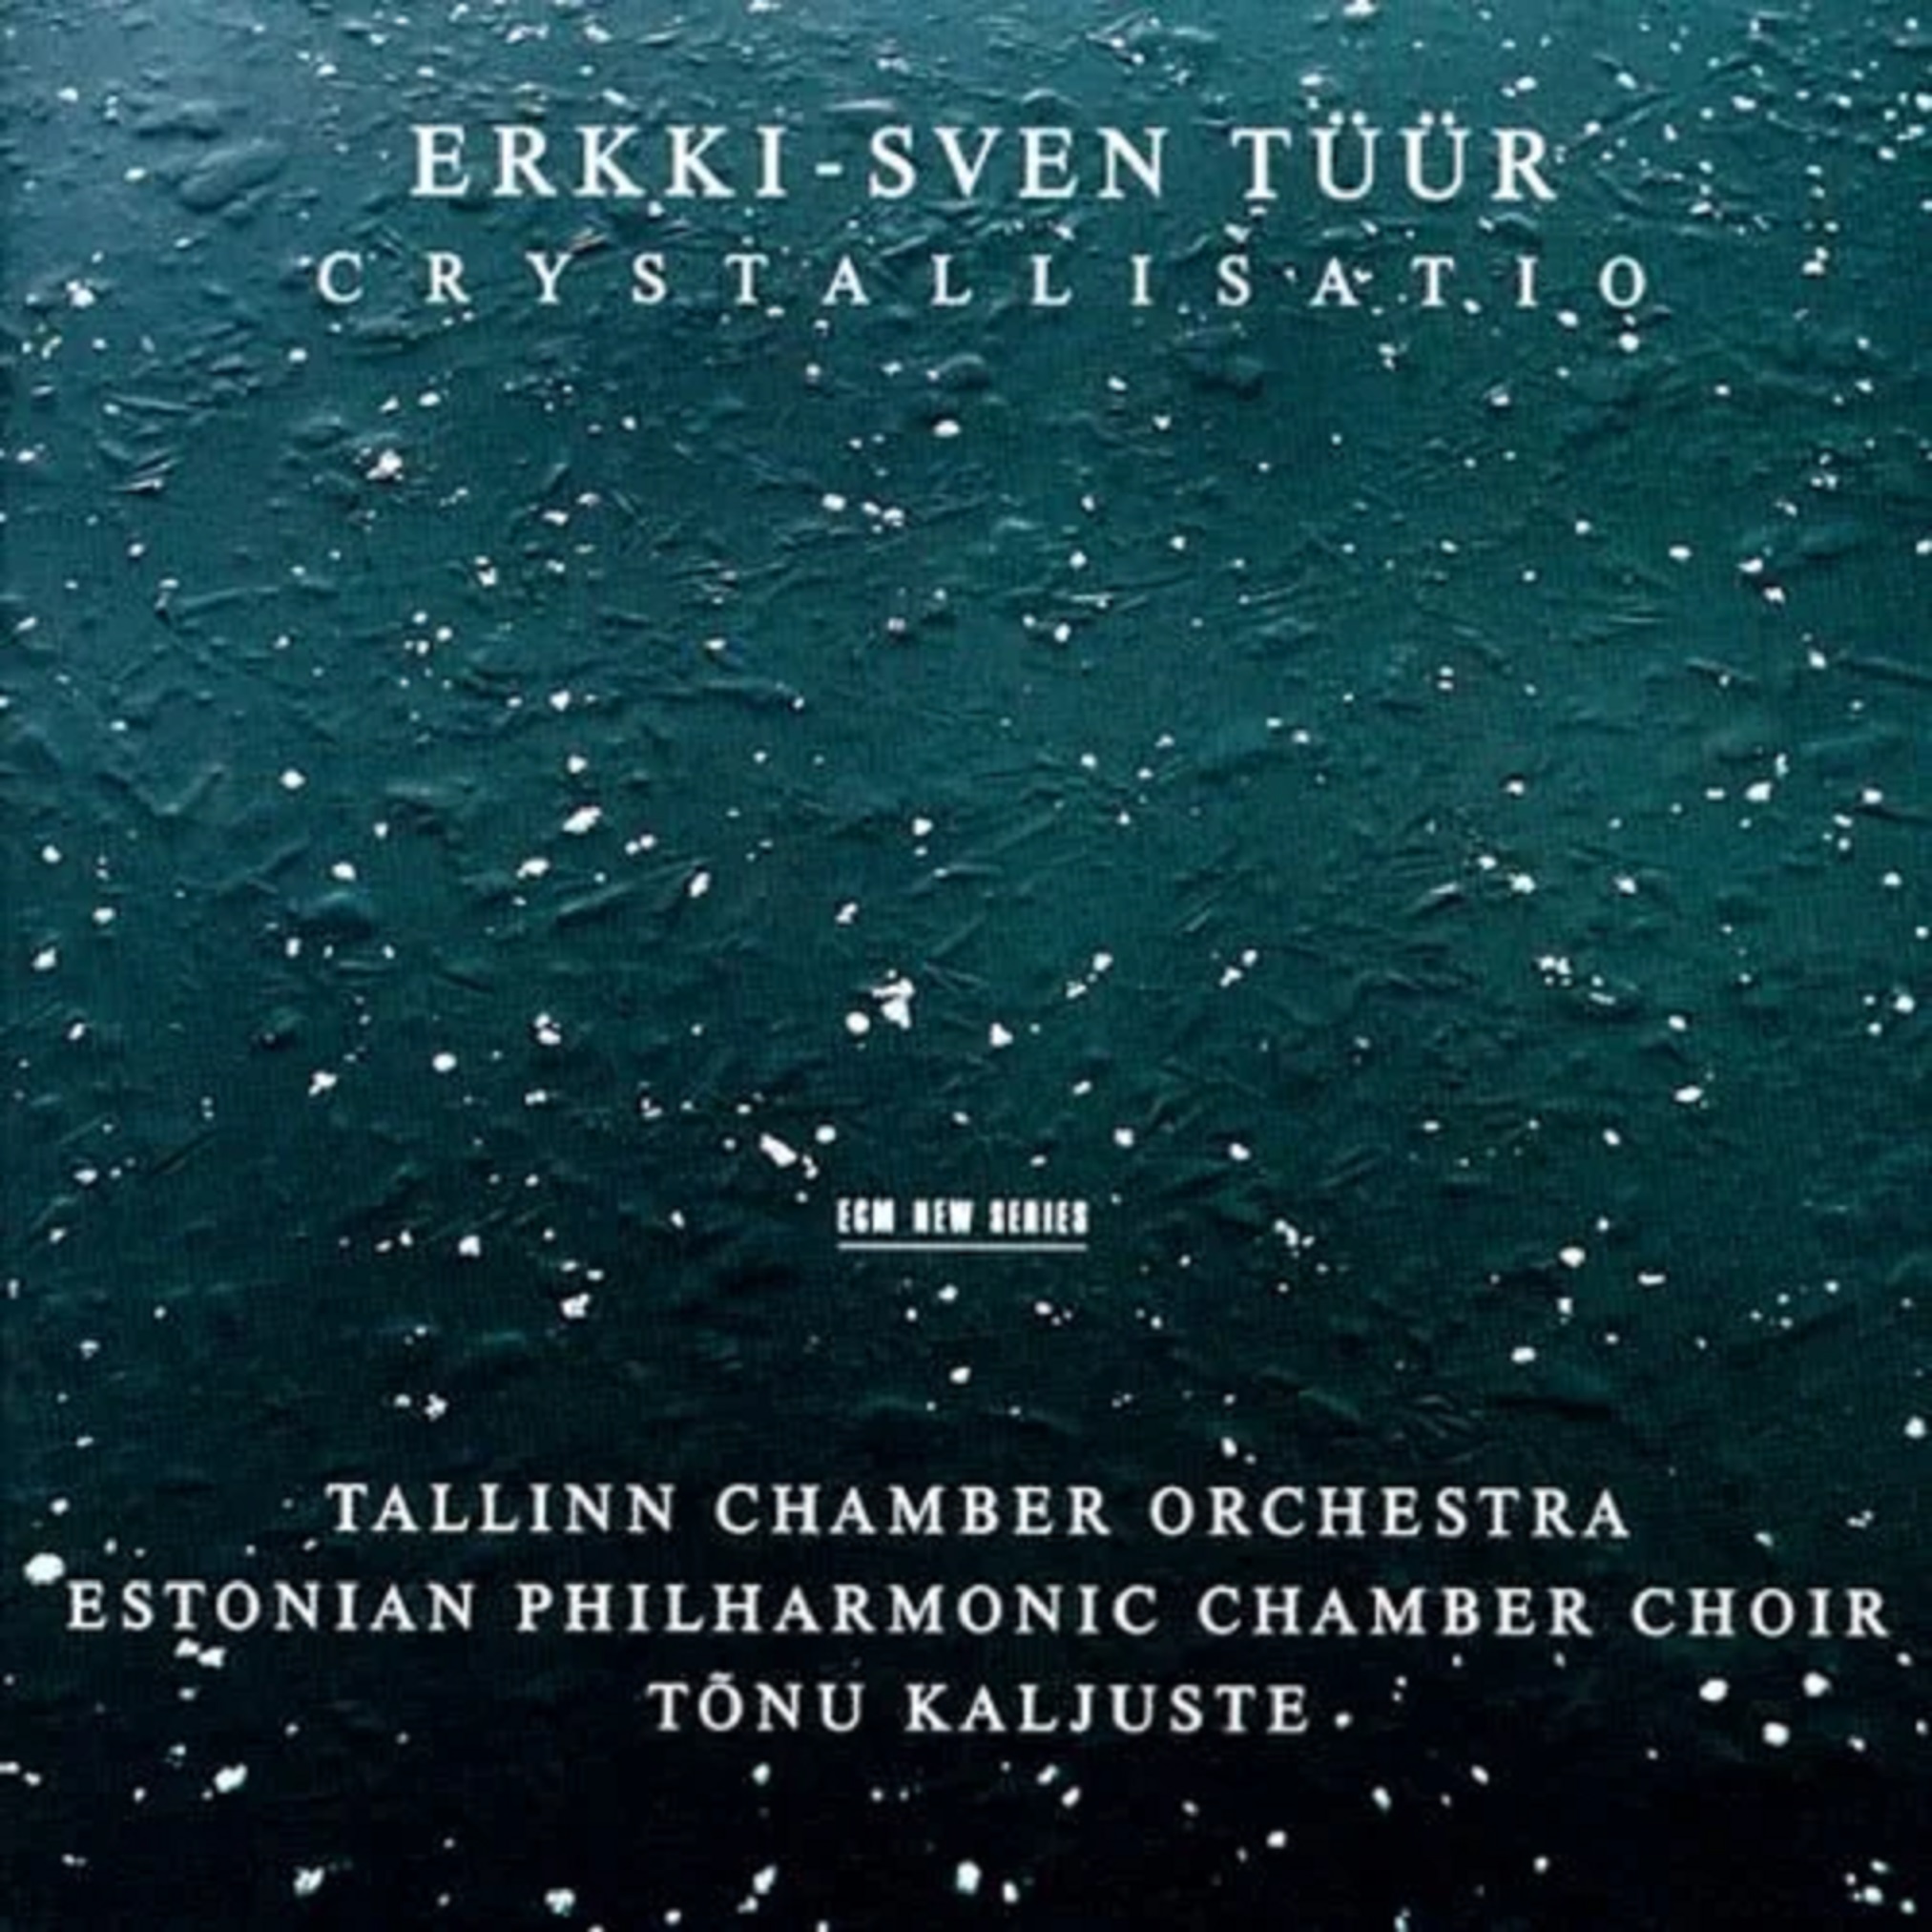 Crystallisatio | Erkki-Sven Tuur, Estonian Philharmonic Chamber Choir